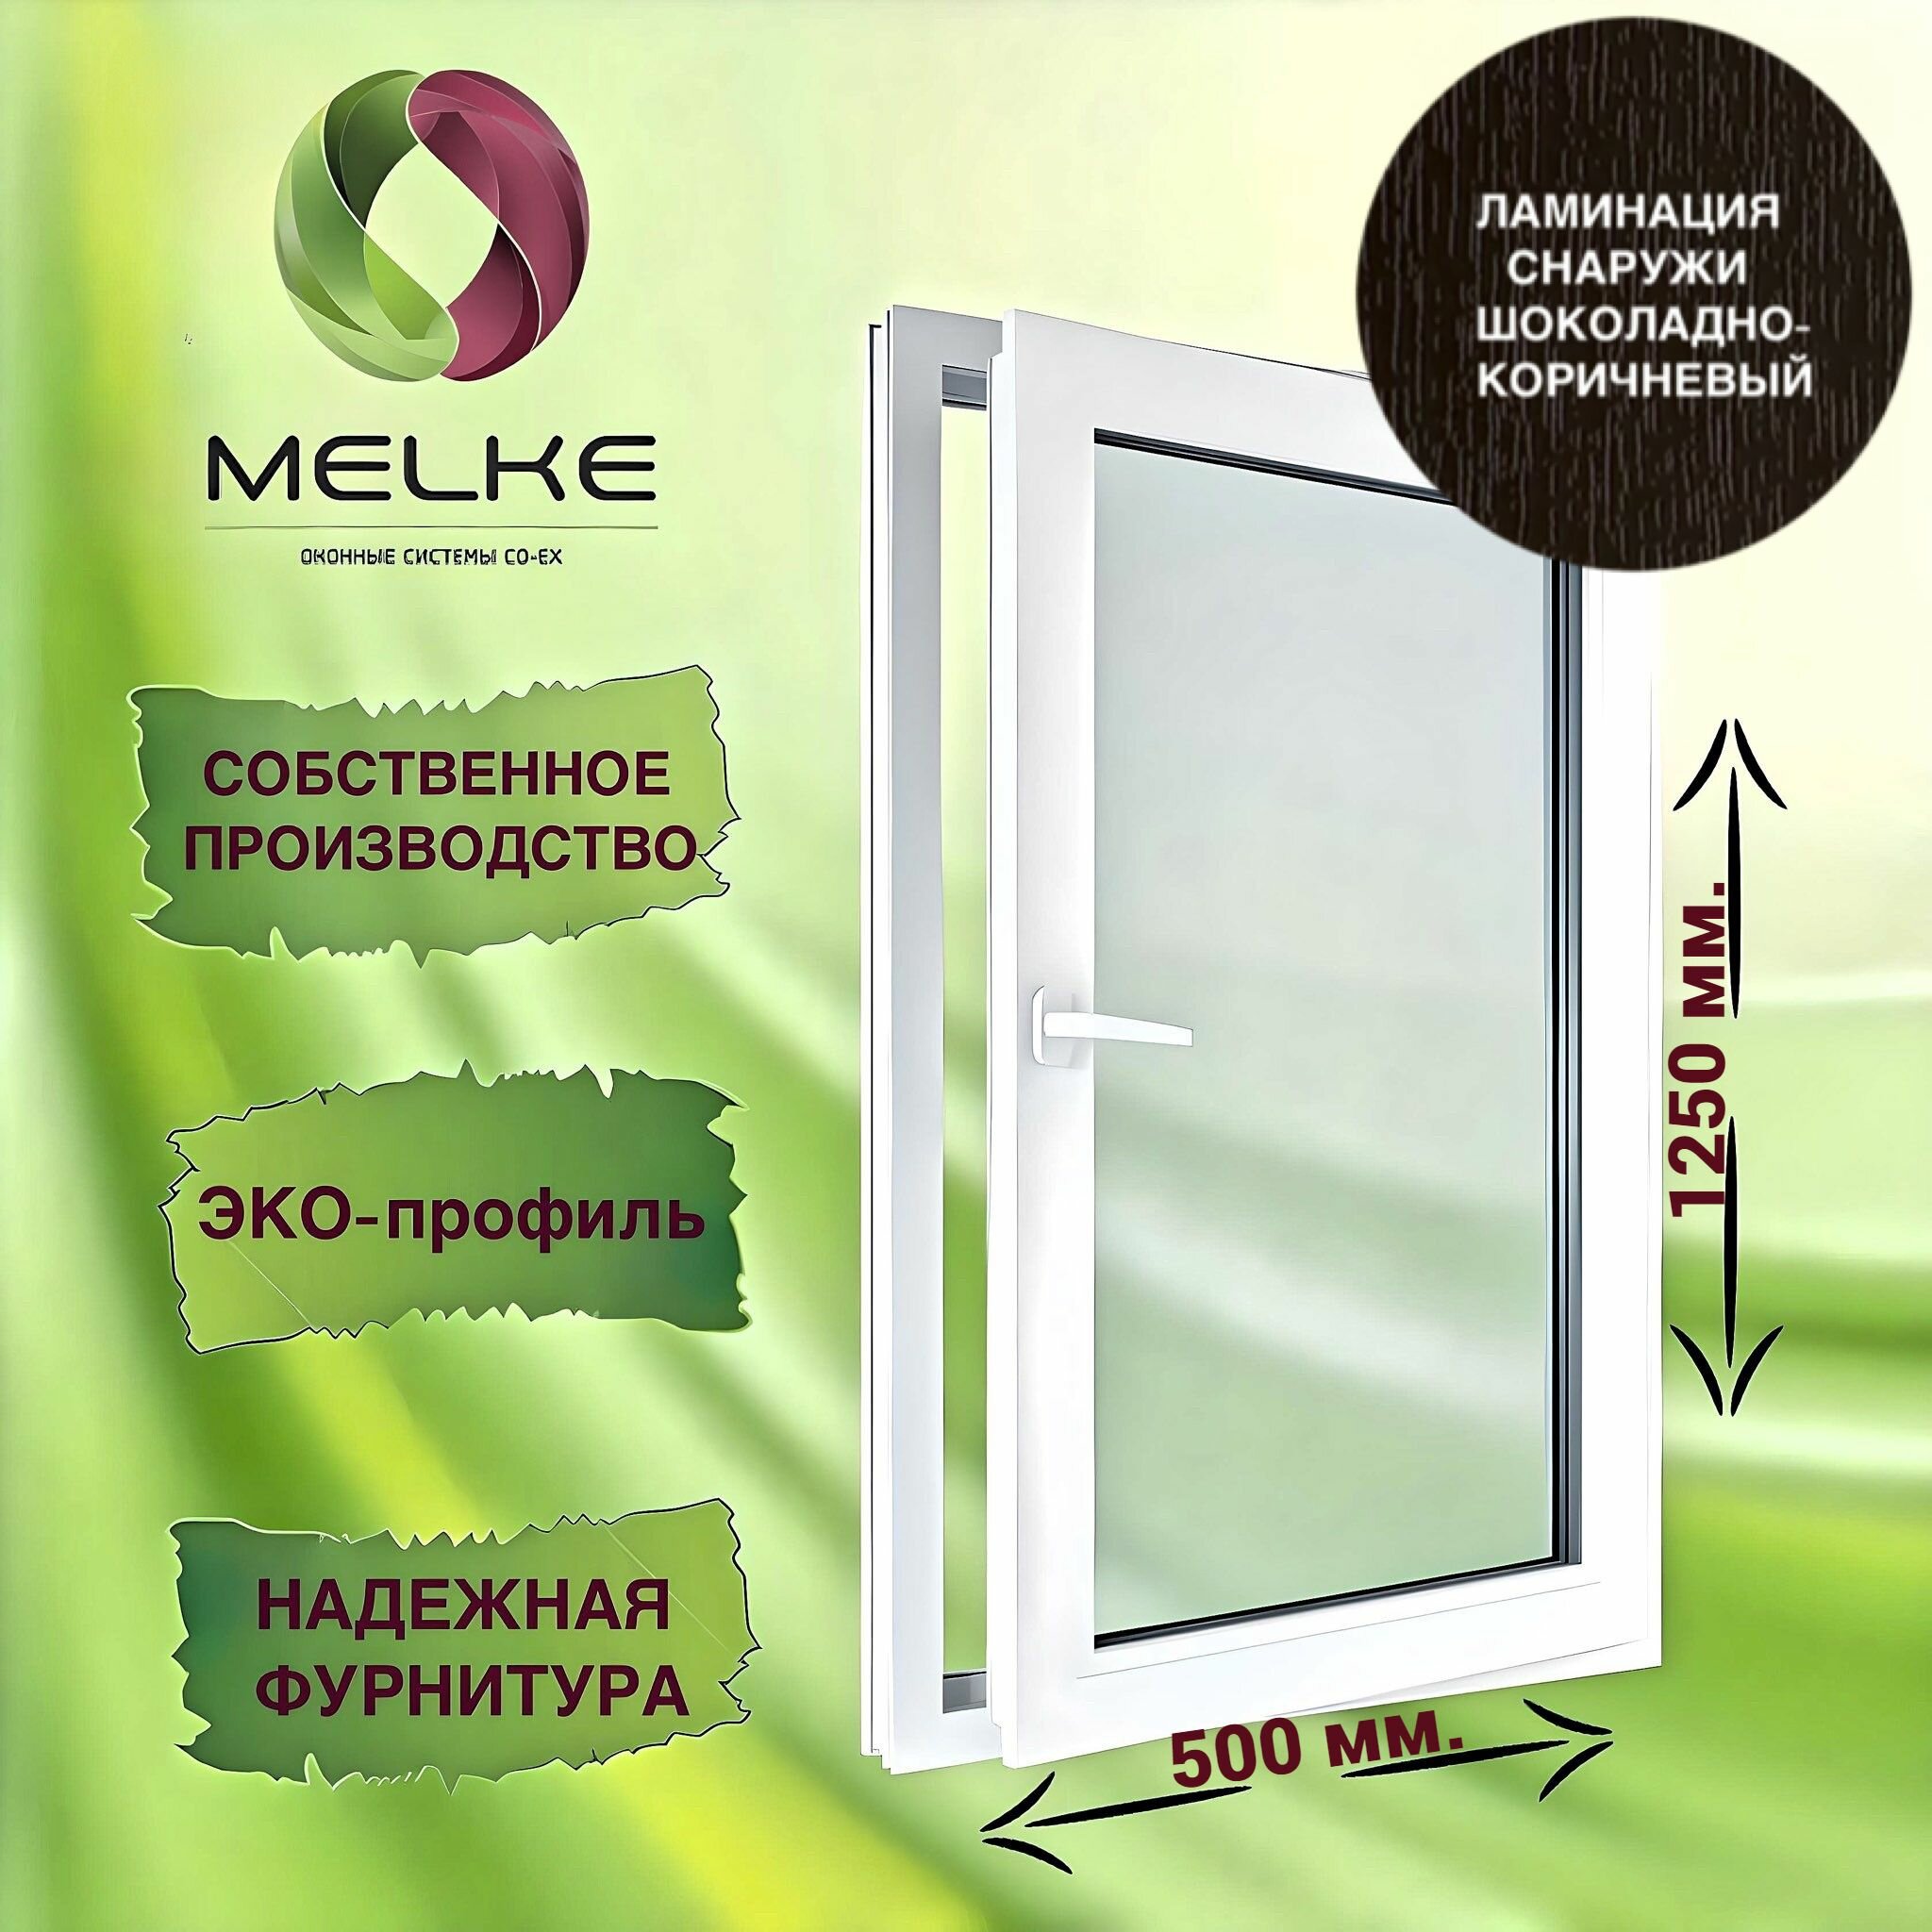 Окно 1250 х 500 мм, Melke 60 (Фурнитура FUTURUSS), правое одностворчатое, поворотно-откидное, цвет внешней ламинации Шоколадно-коричневый, 2-х камерный стеклопакет, 3 стекла